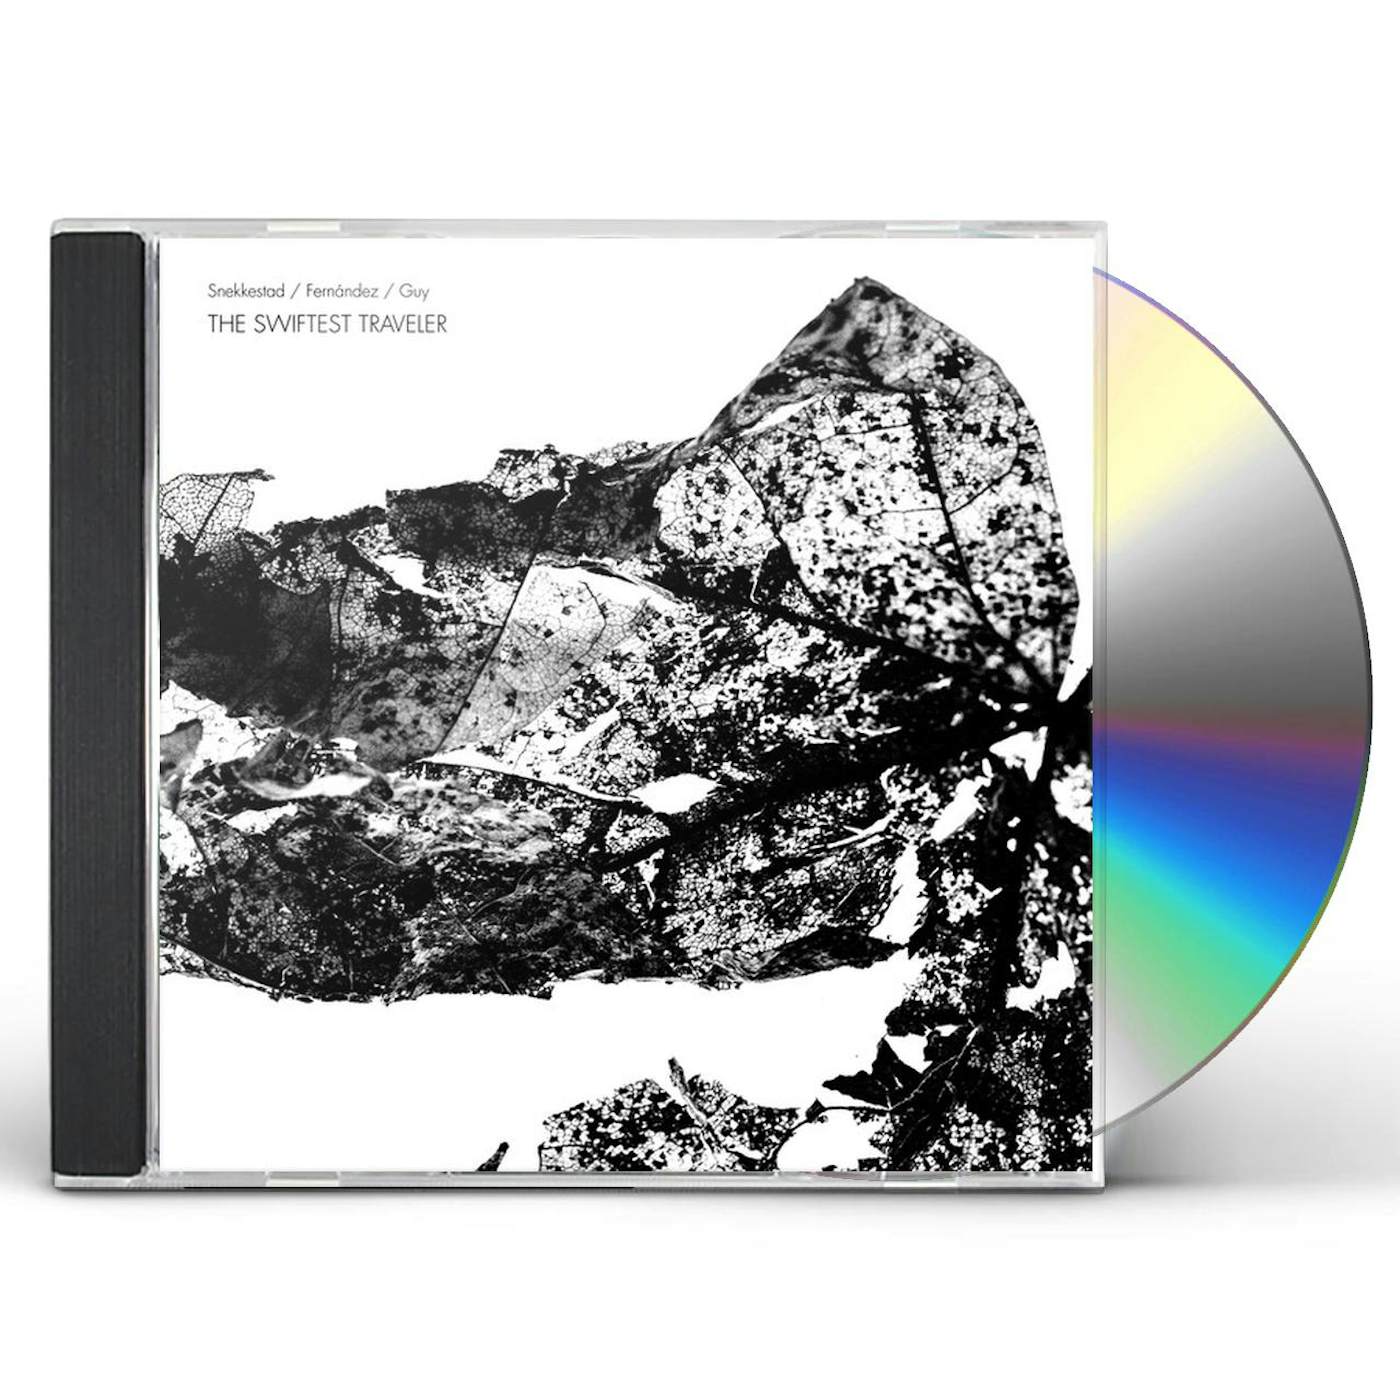 Snekkestad / Fernandez / Guy SWIFTEST TRAVELER CD